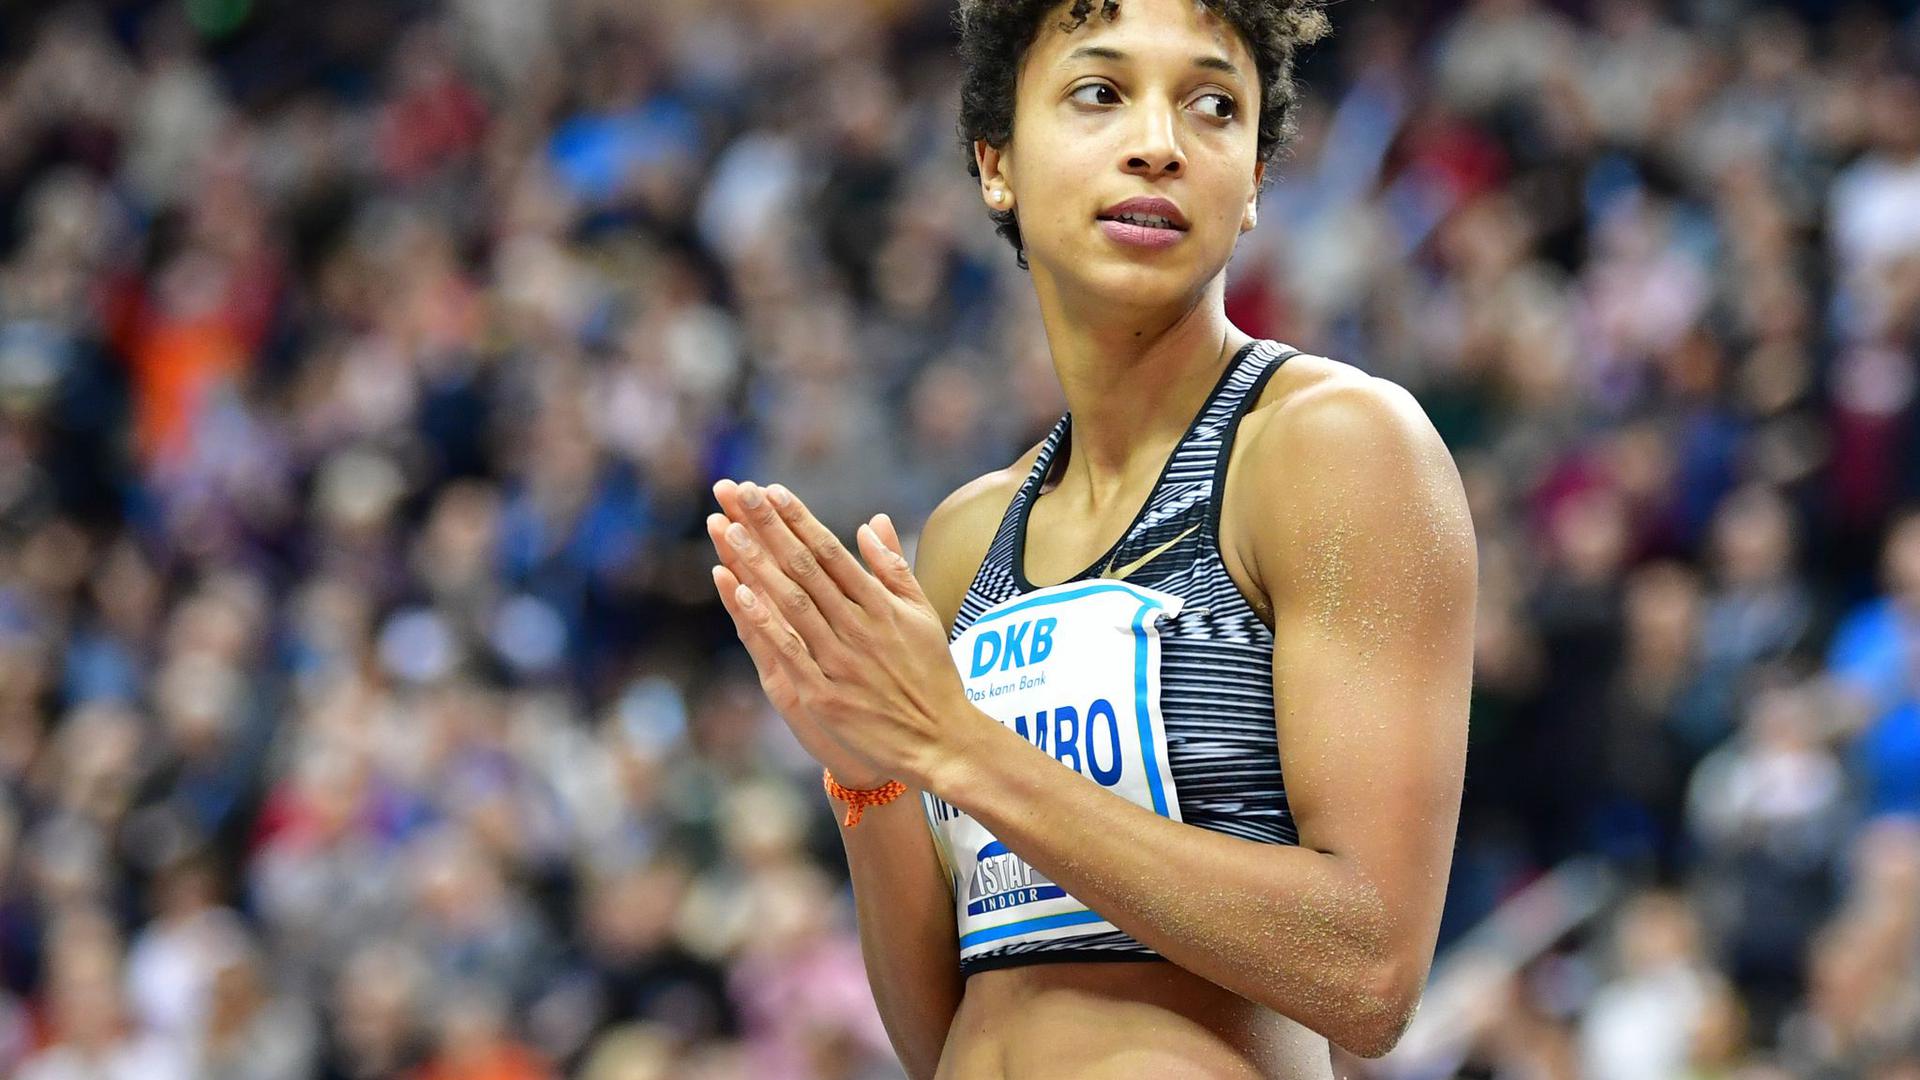 Malaika Mihambo gehört zu den prominentesten Teilnehmer der 120. deutschen Leichtathletik-Meisterschaften.